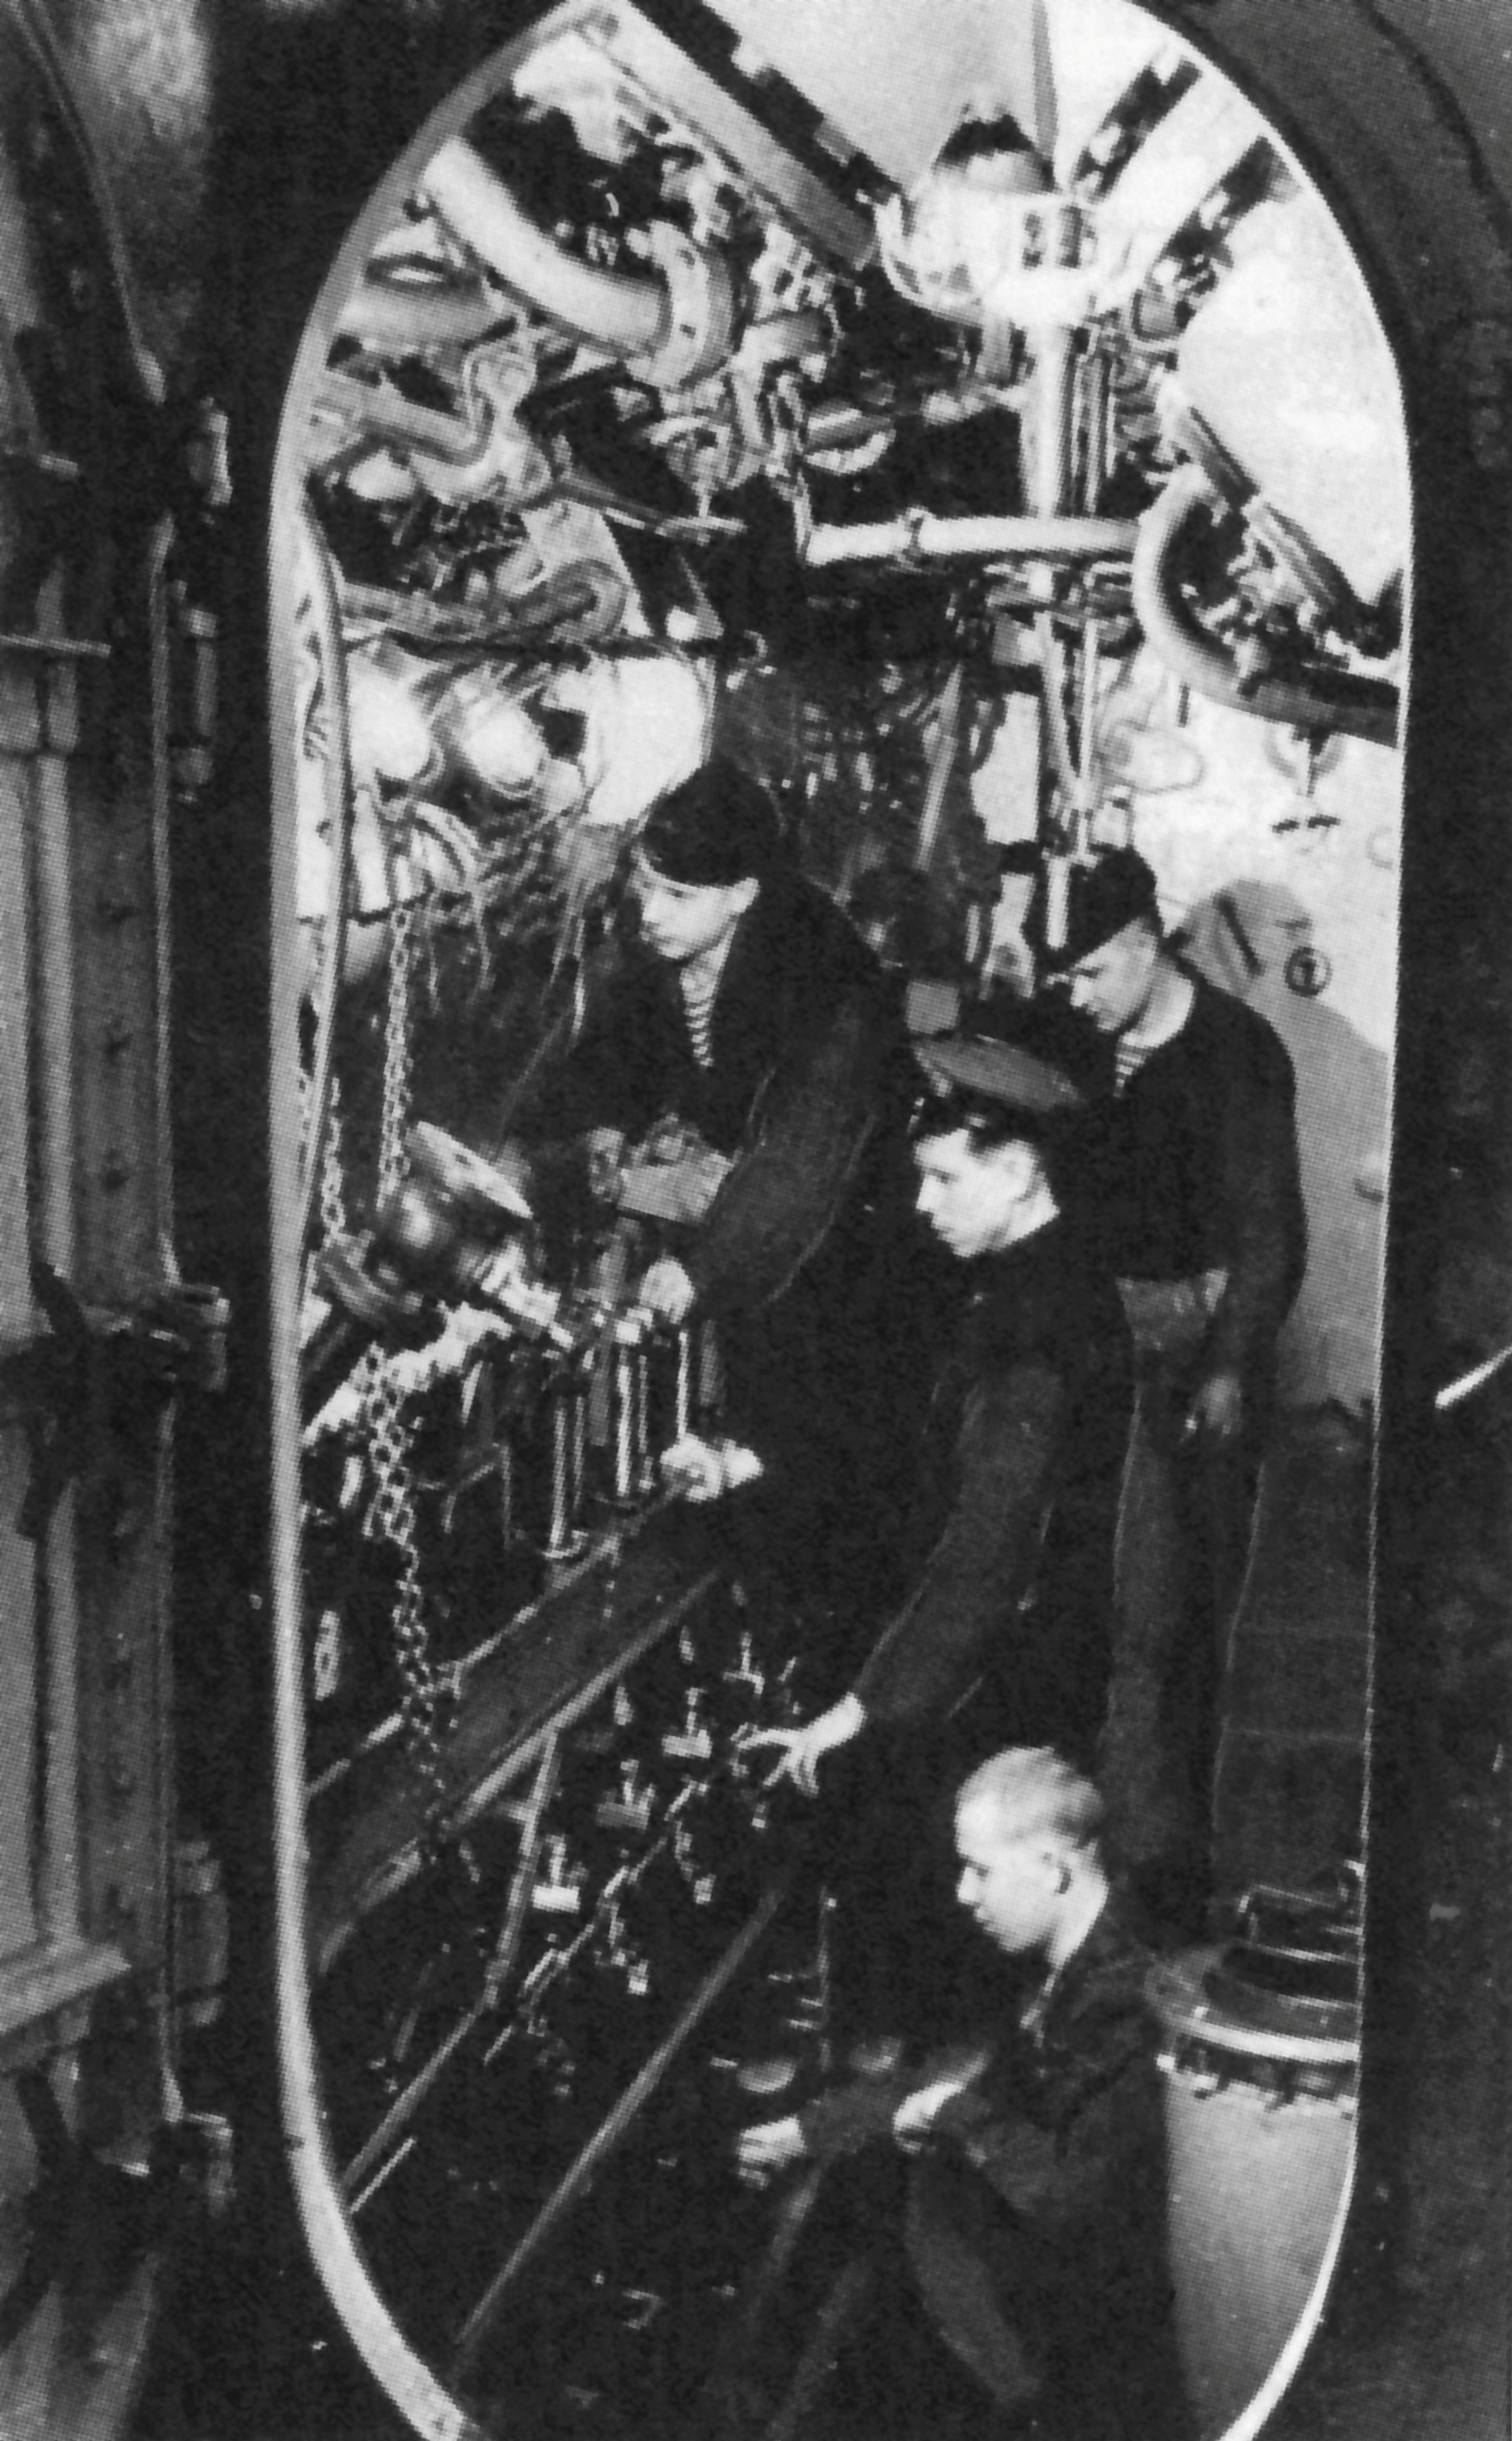 Мотористы советской подводной лодки Щ-406 за ремонтом дизелей.

